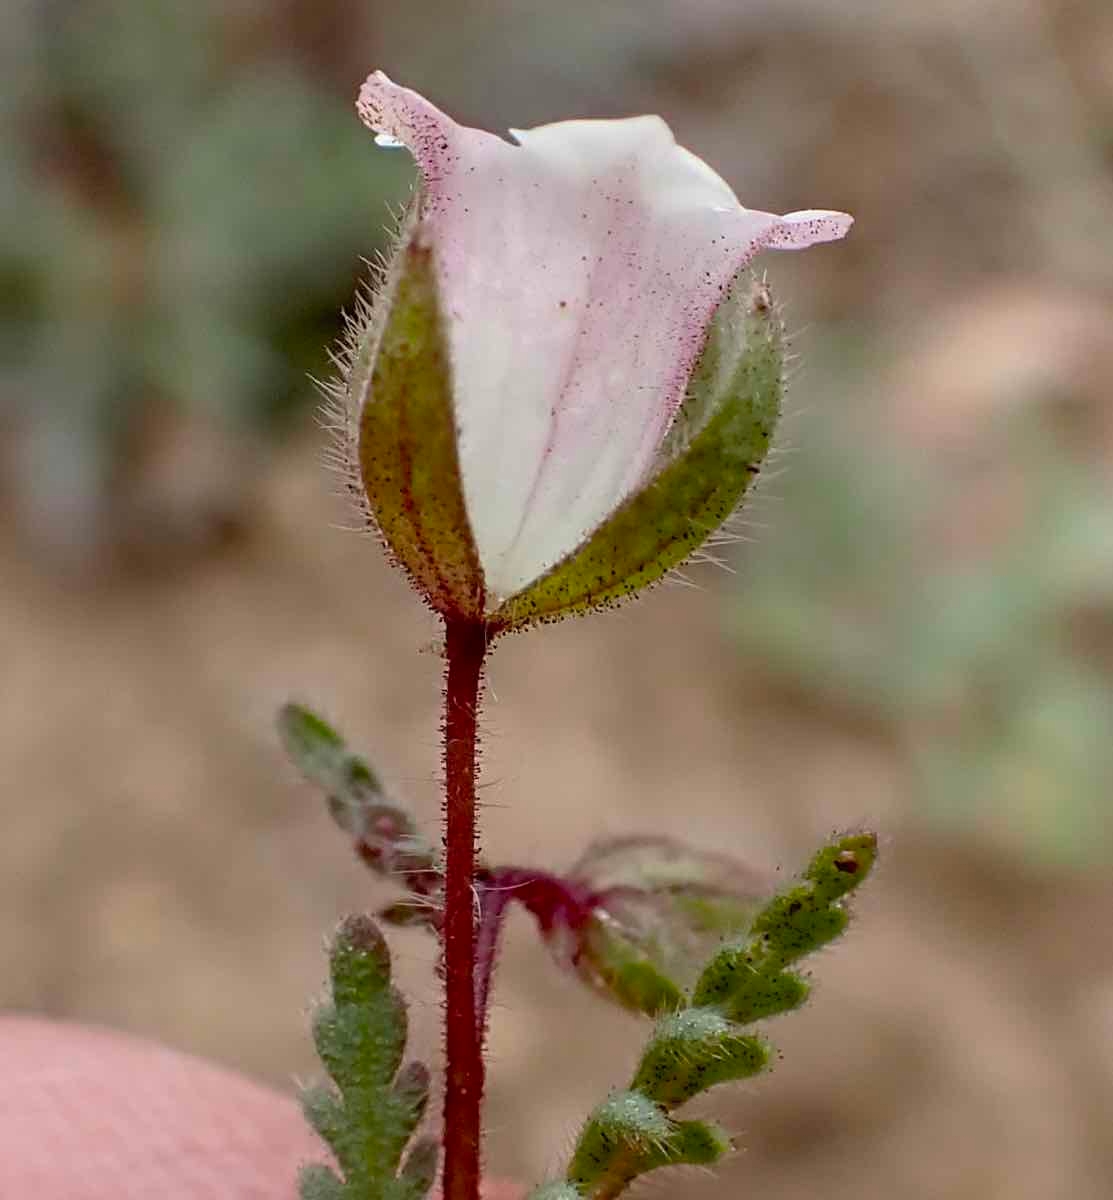 Emmenanthe rosea